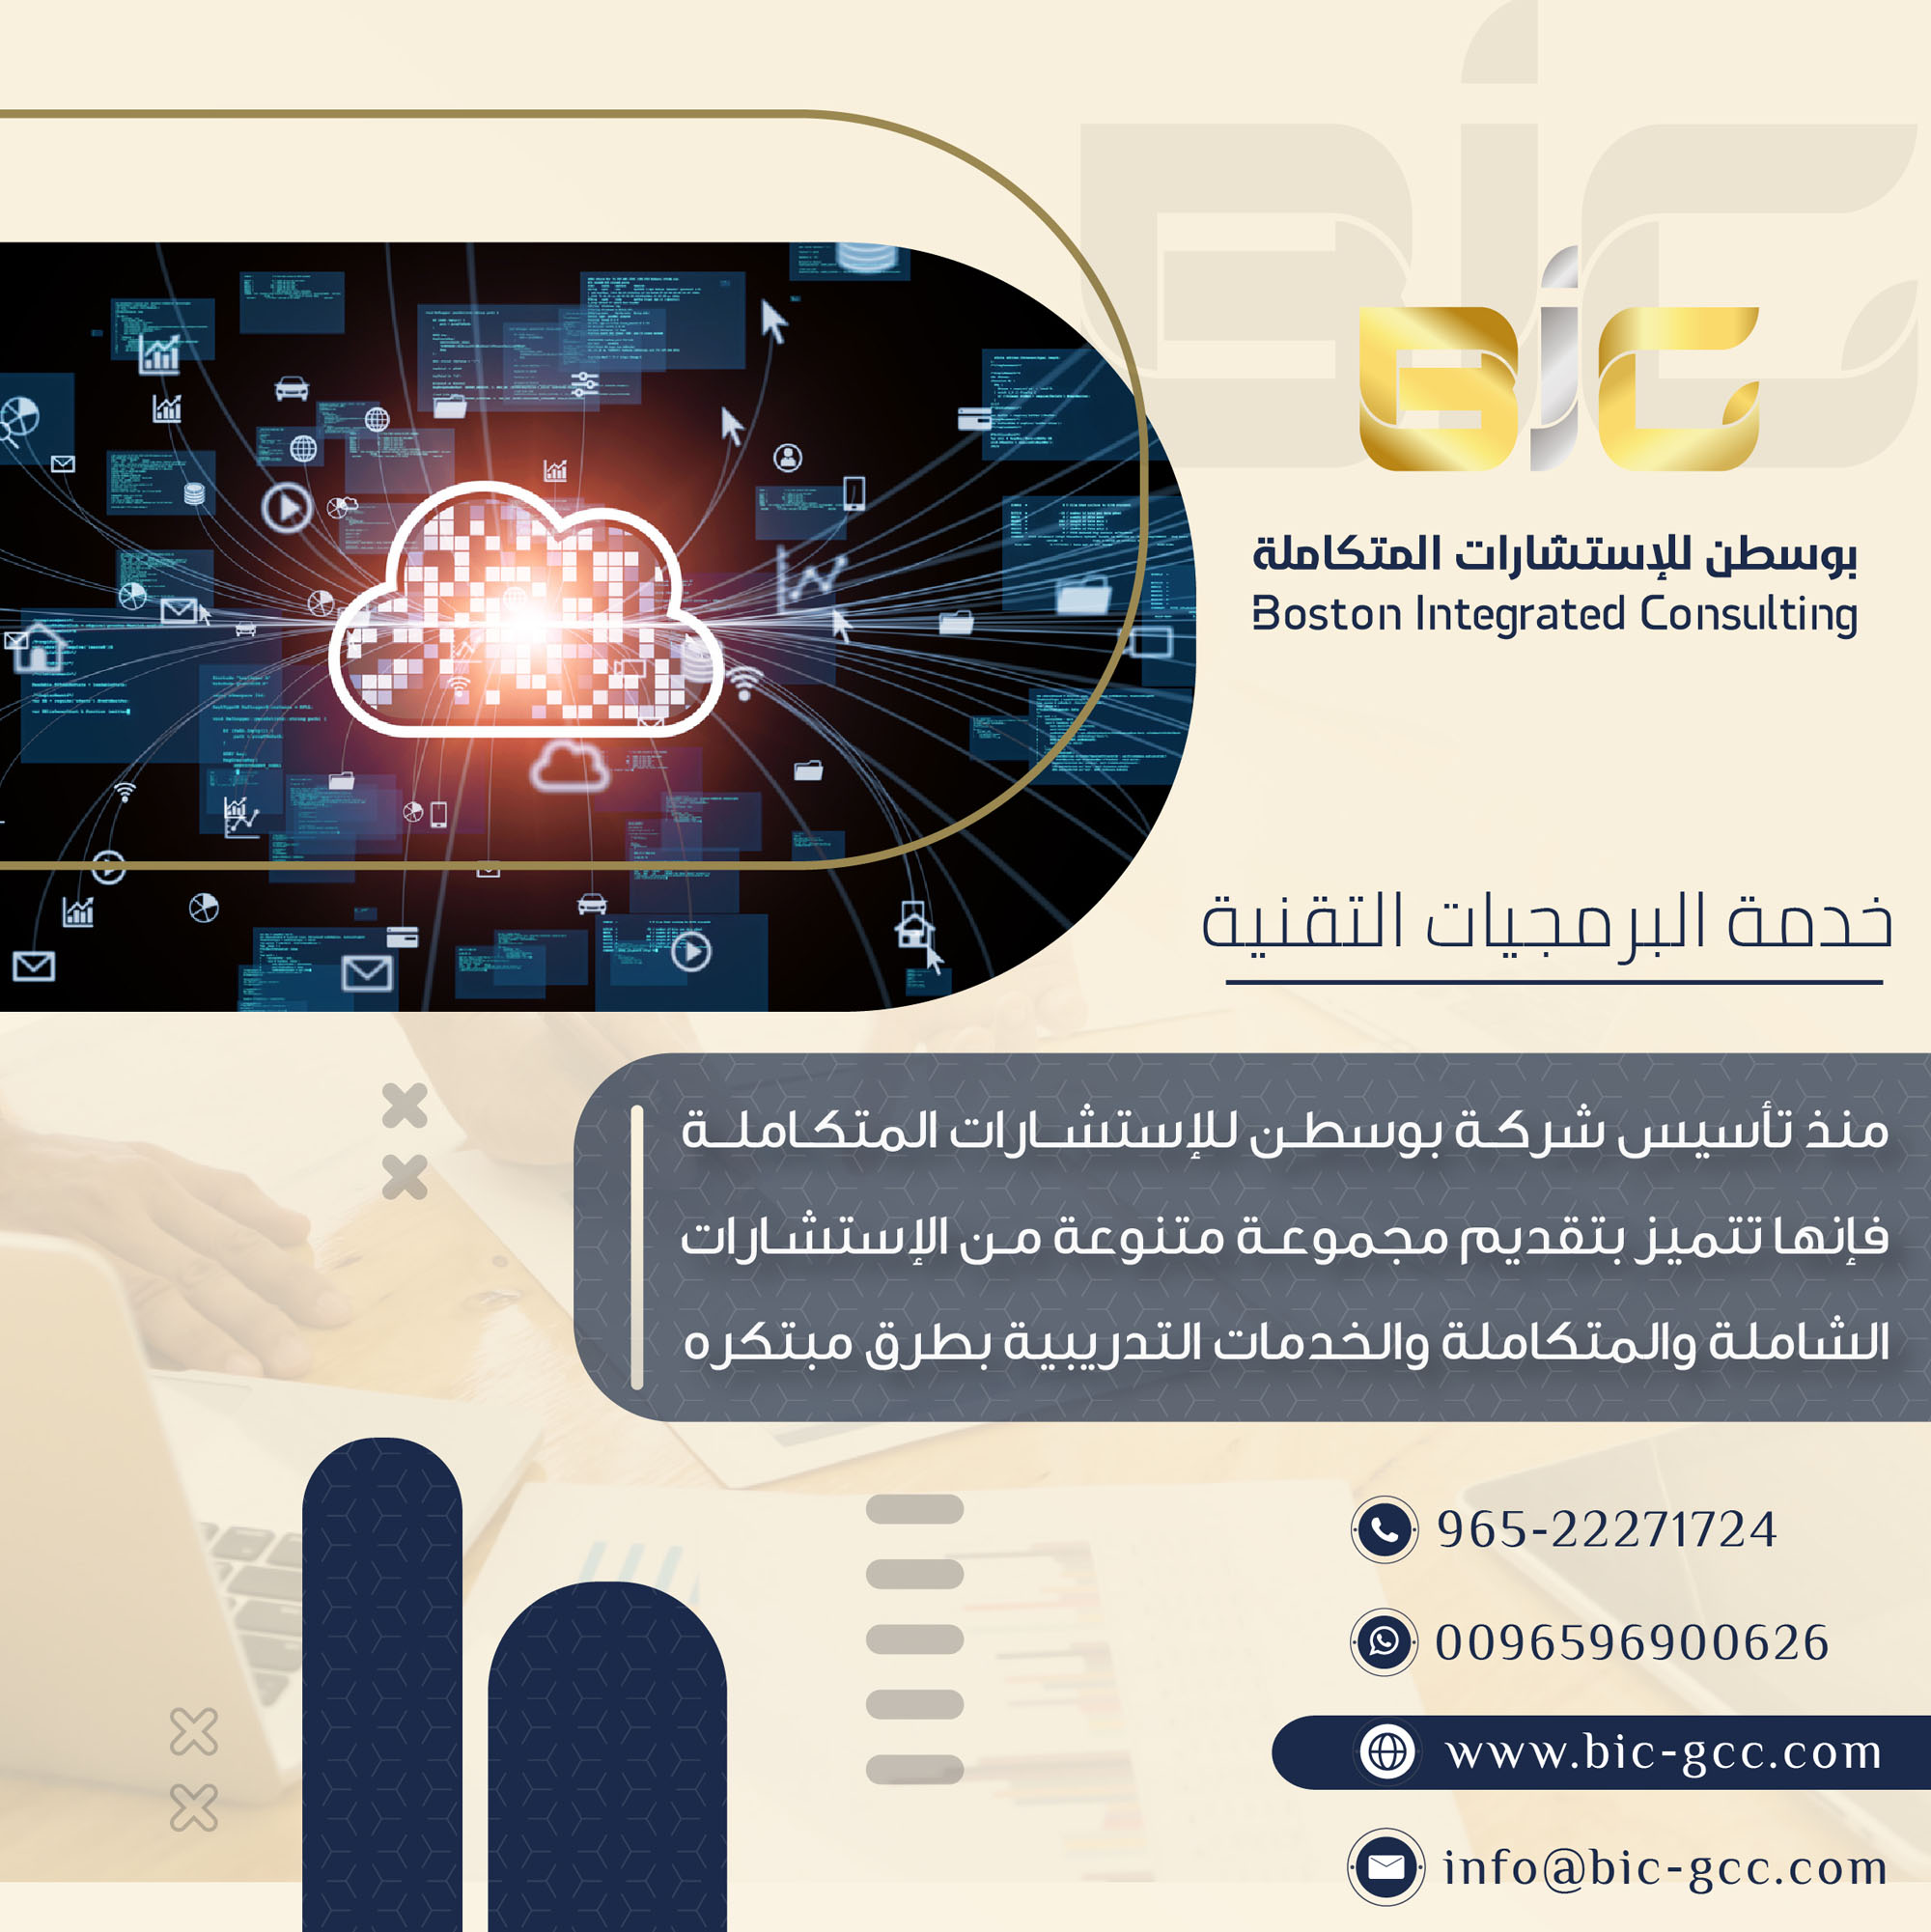 تصميم إعلانات لشركة بوسطن الإستشارات المتكاملة في الكويت